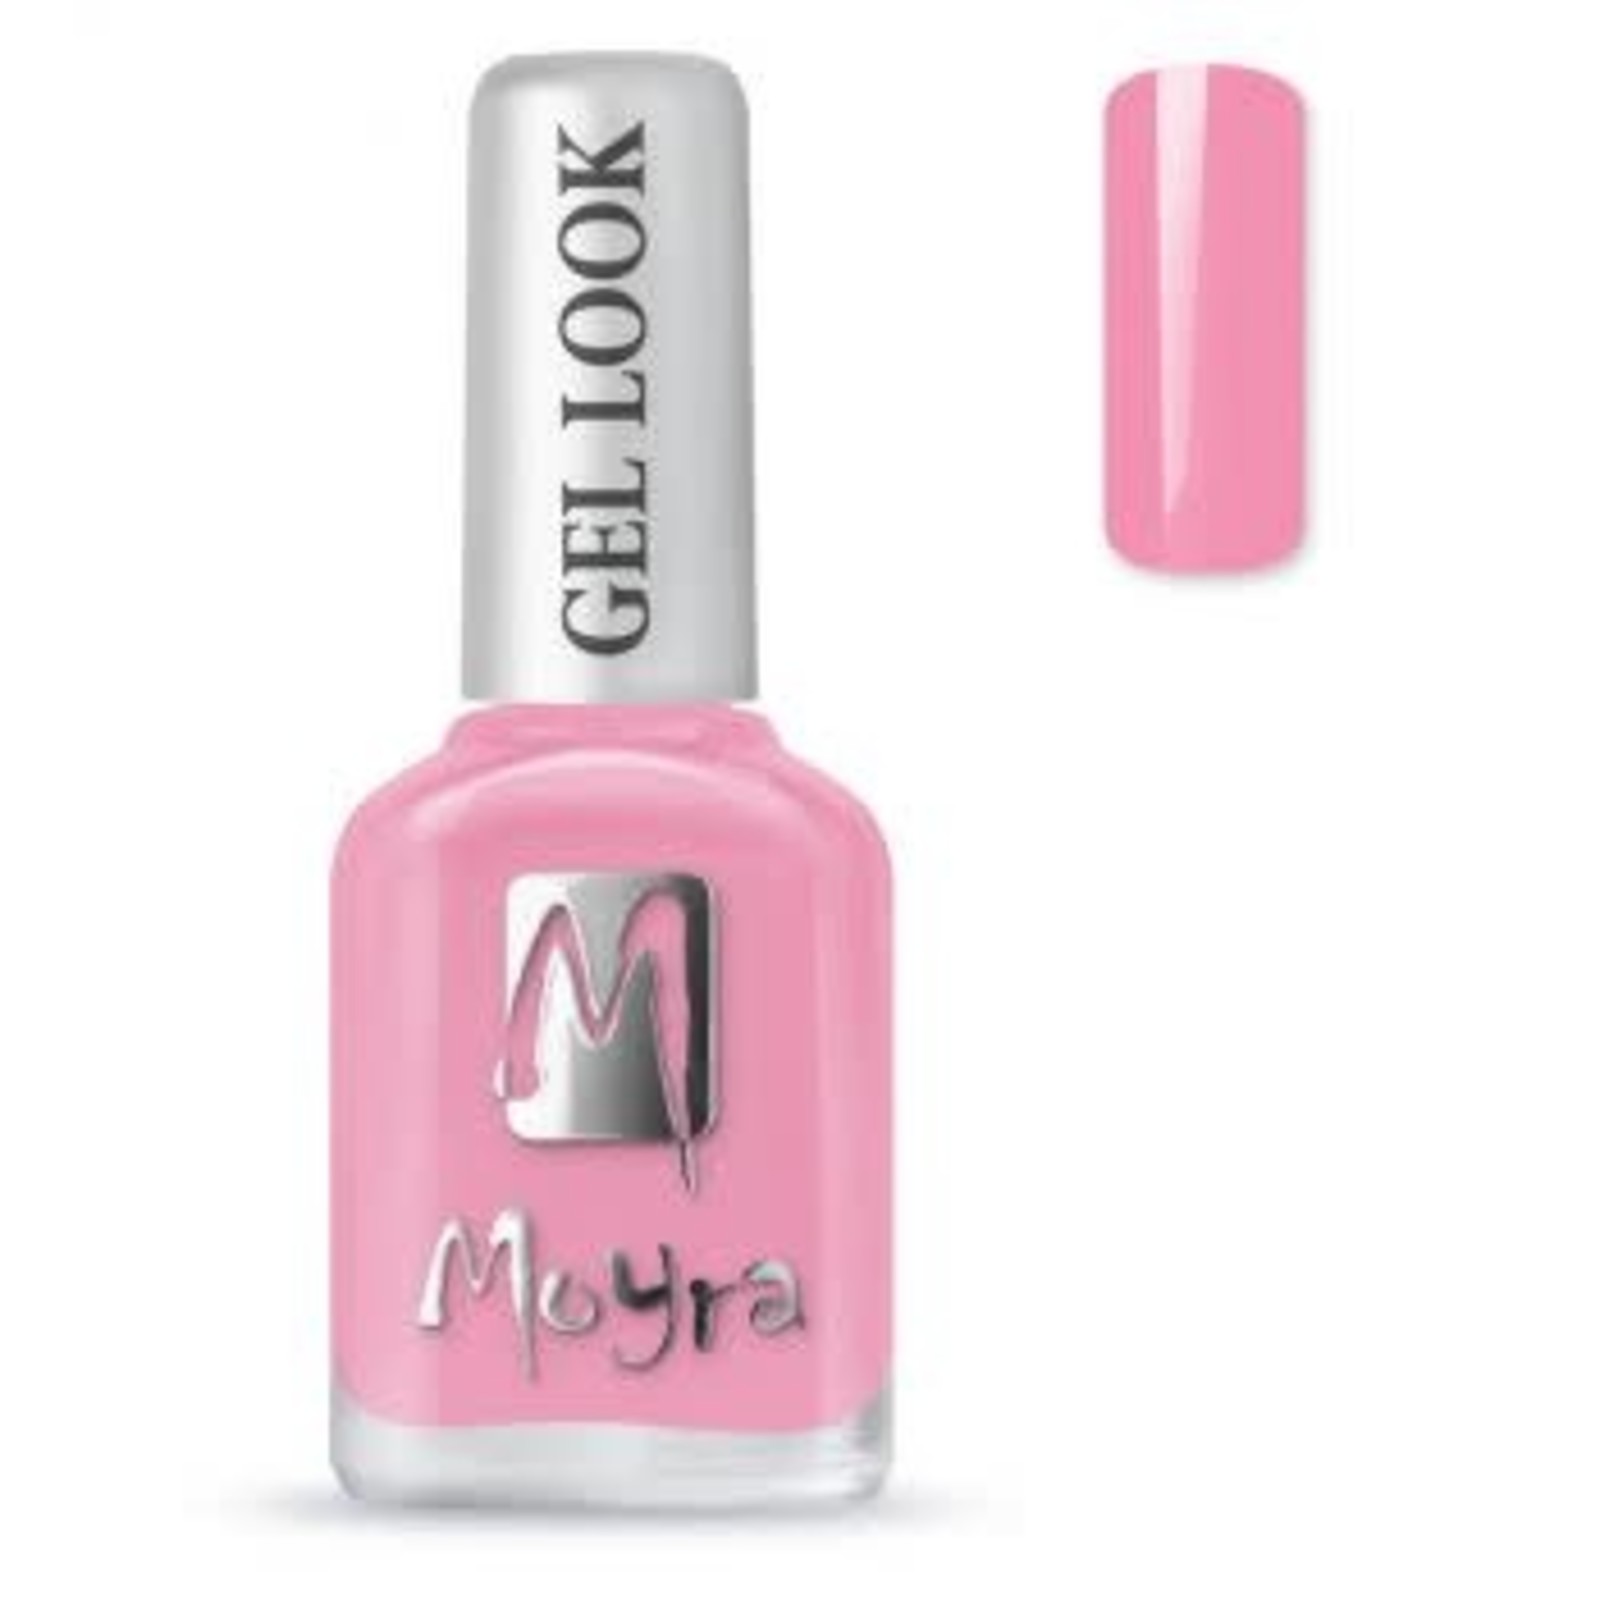 Moyra Moyra nail polish gel look 1048